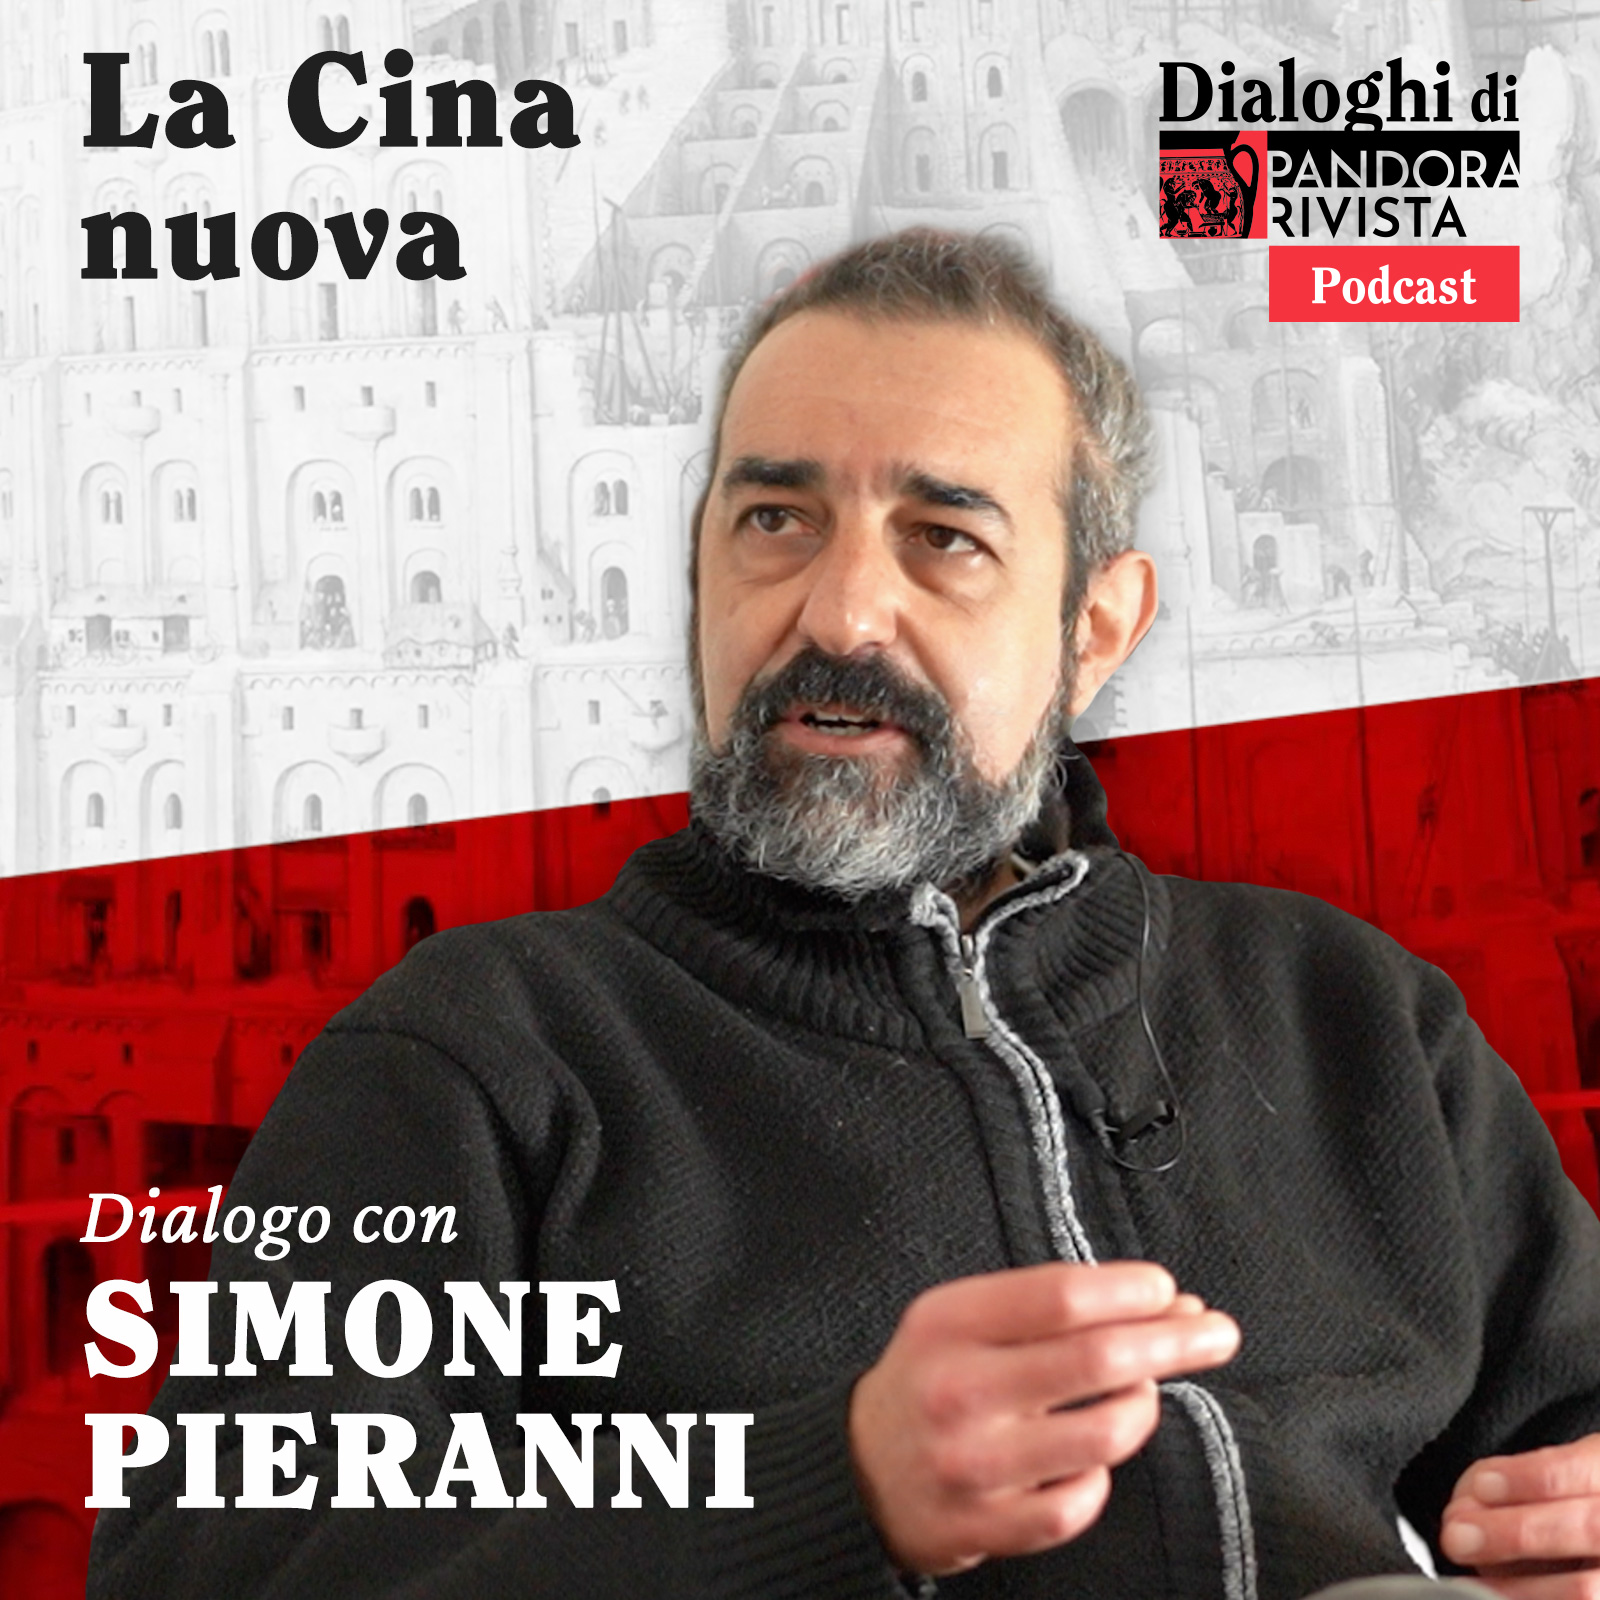 Simone Pieranni – La Cina nuova